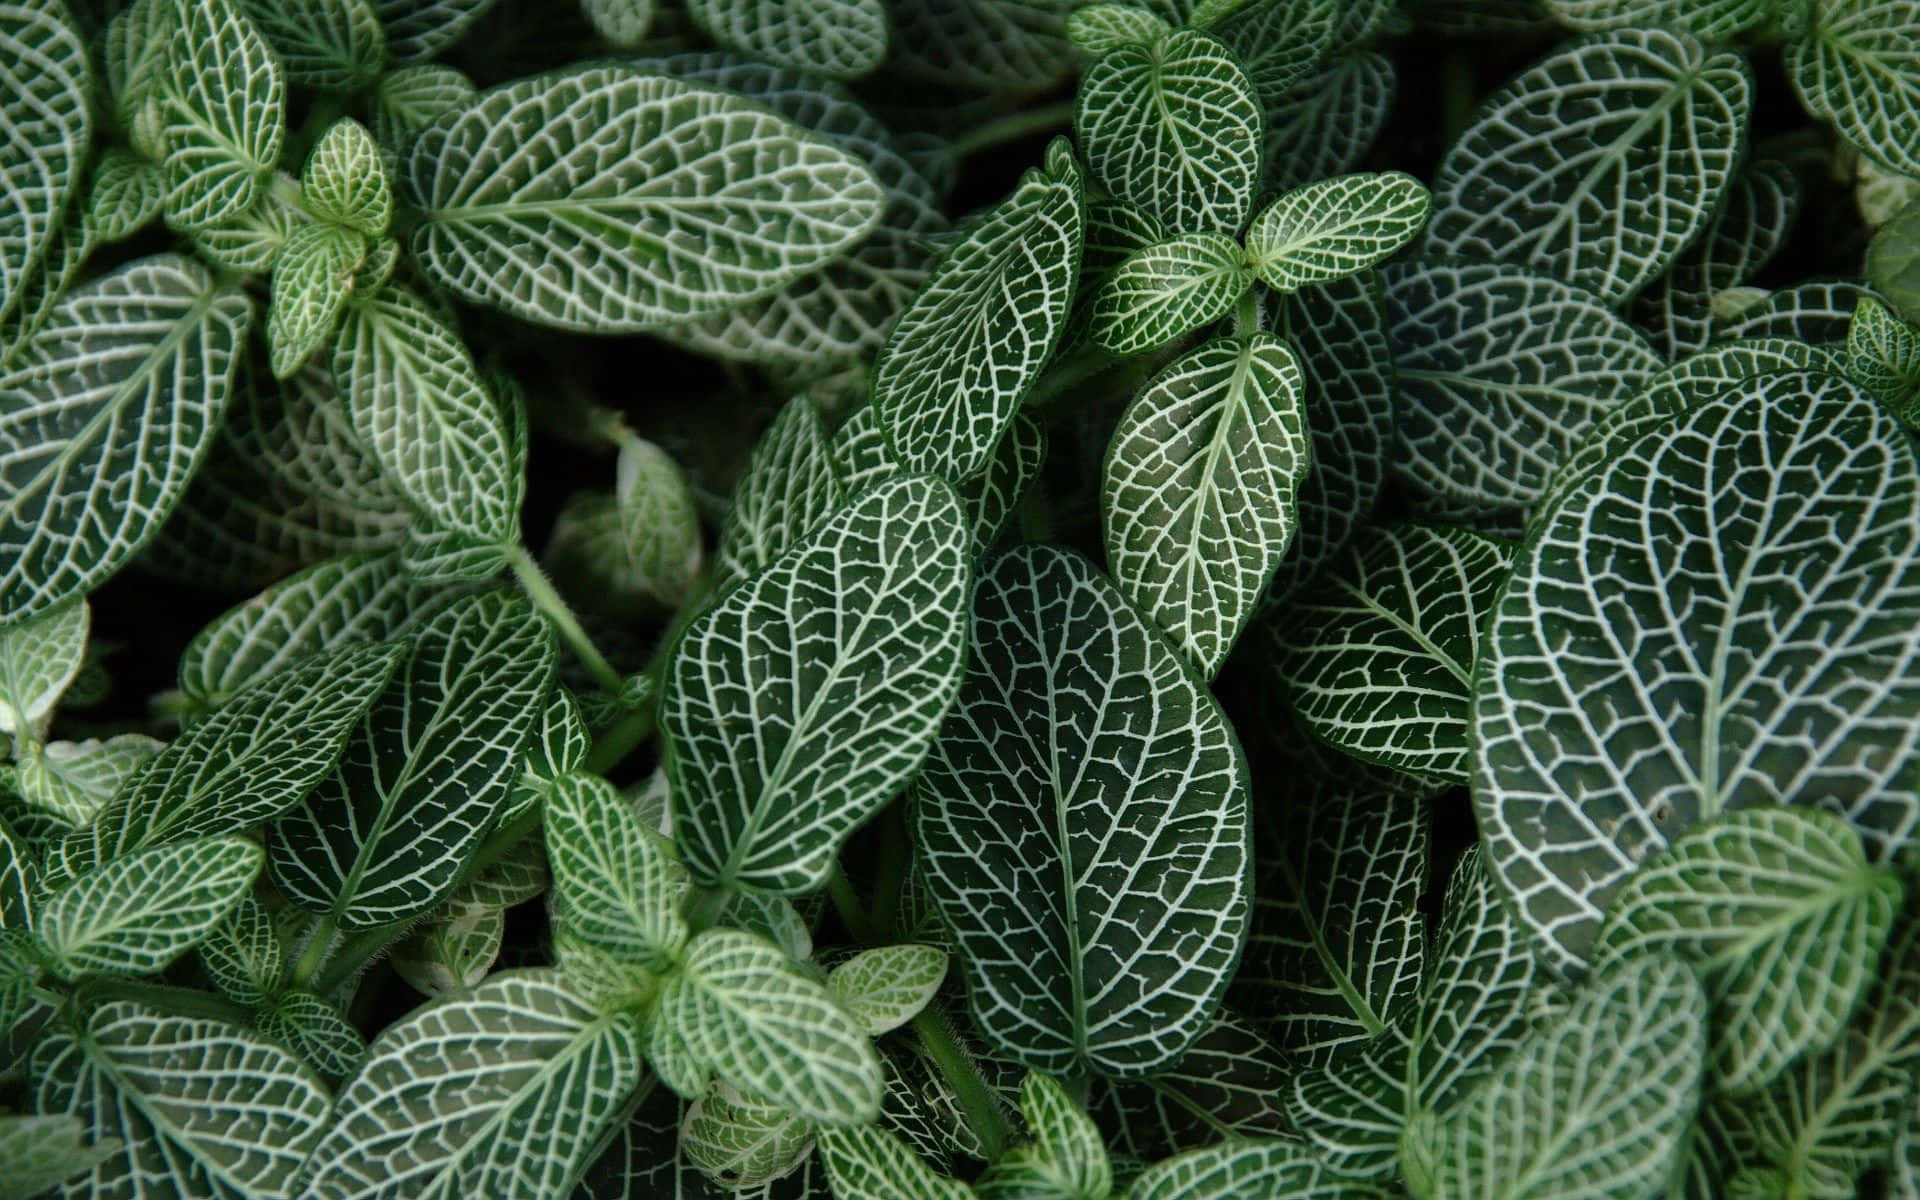 Umaimagem Em Close-up De Uma Planta Com Folhas Verdes. Papel de Parede